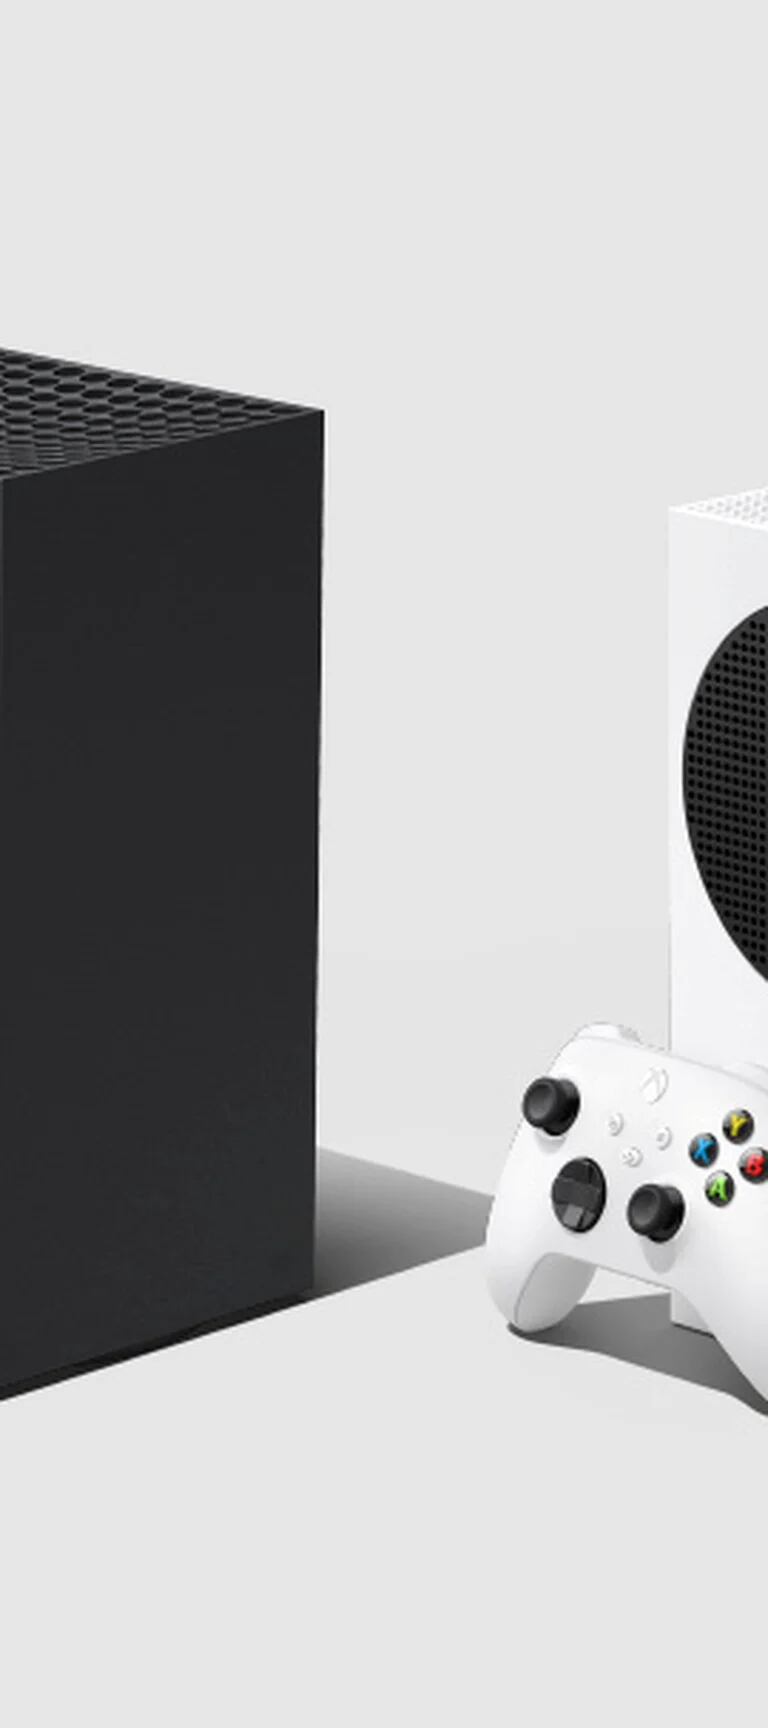 Xbox Series X y S: parecidos y diferencias entre las dos consolas de  Microsoft - LA NACION